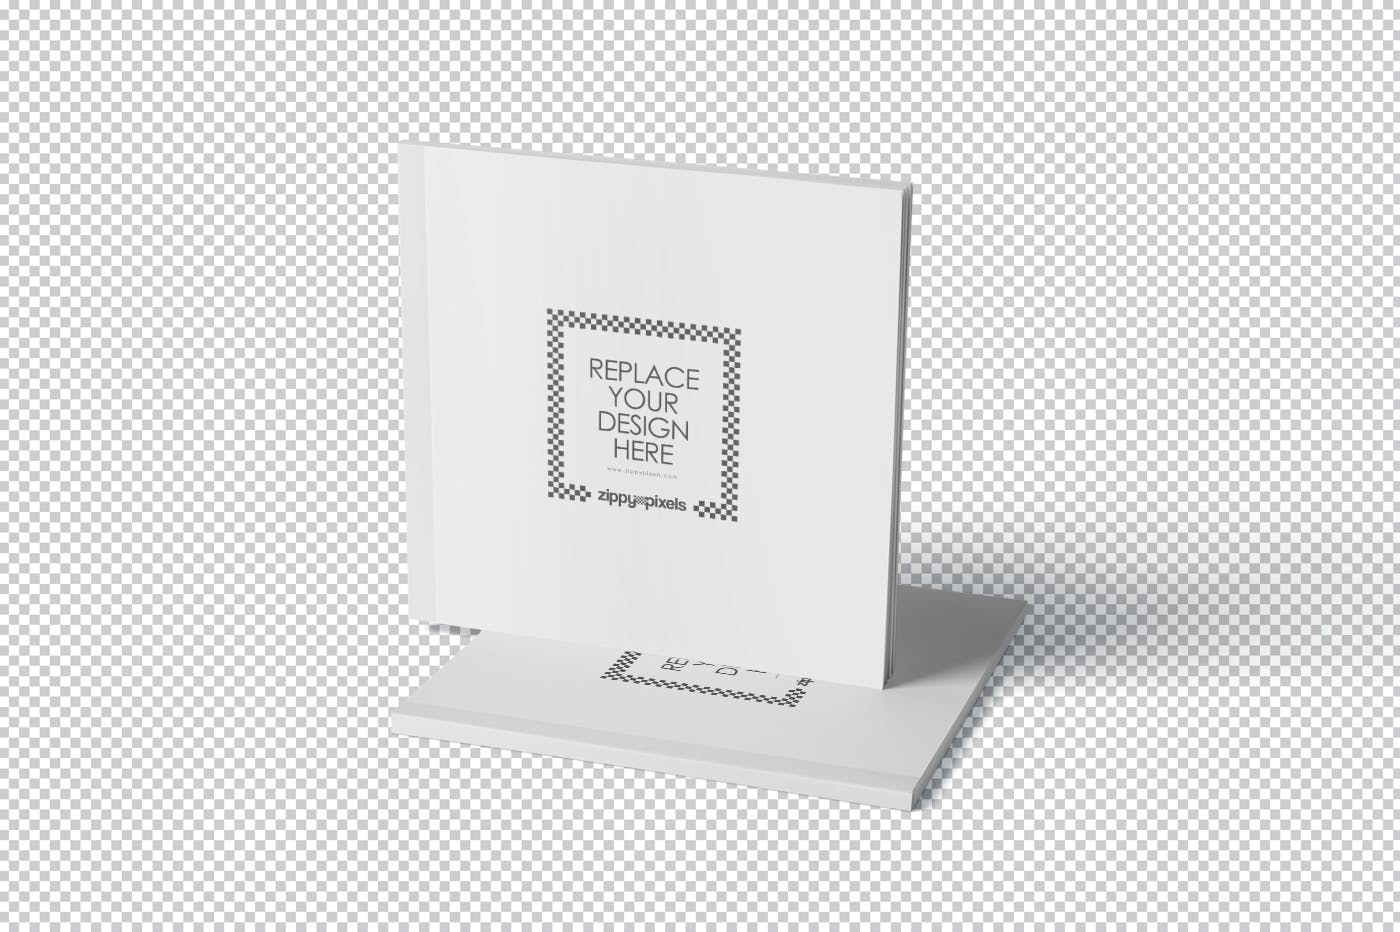 方形杂志印刷效果图样机第一素材精选PSD模板 Square Magazine Mockup Set插图(5)